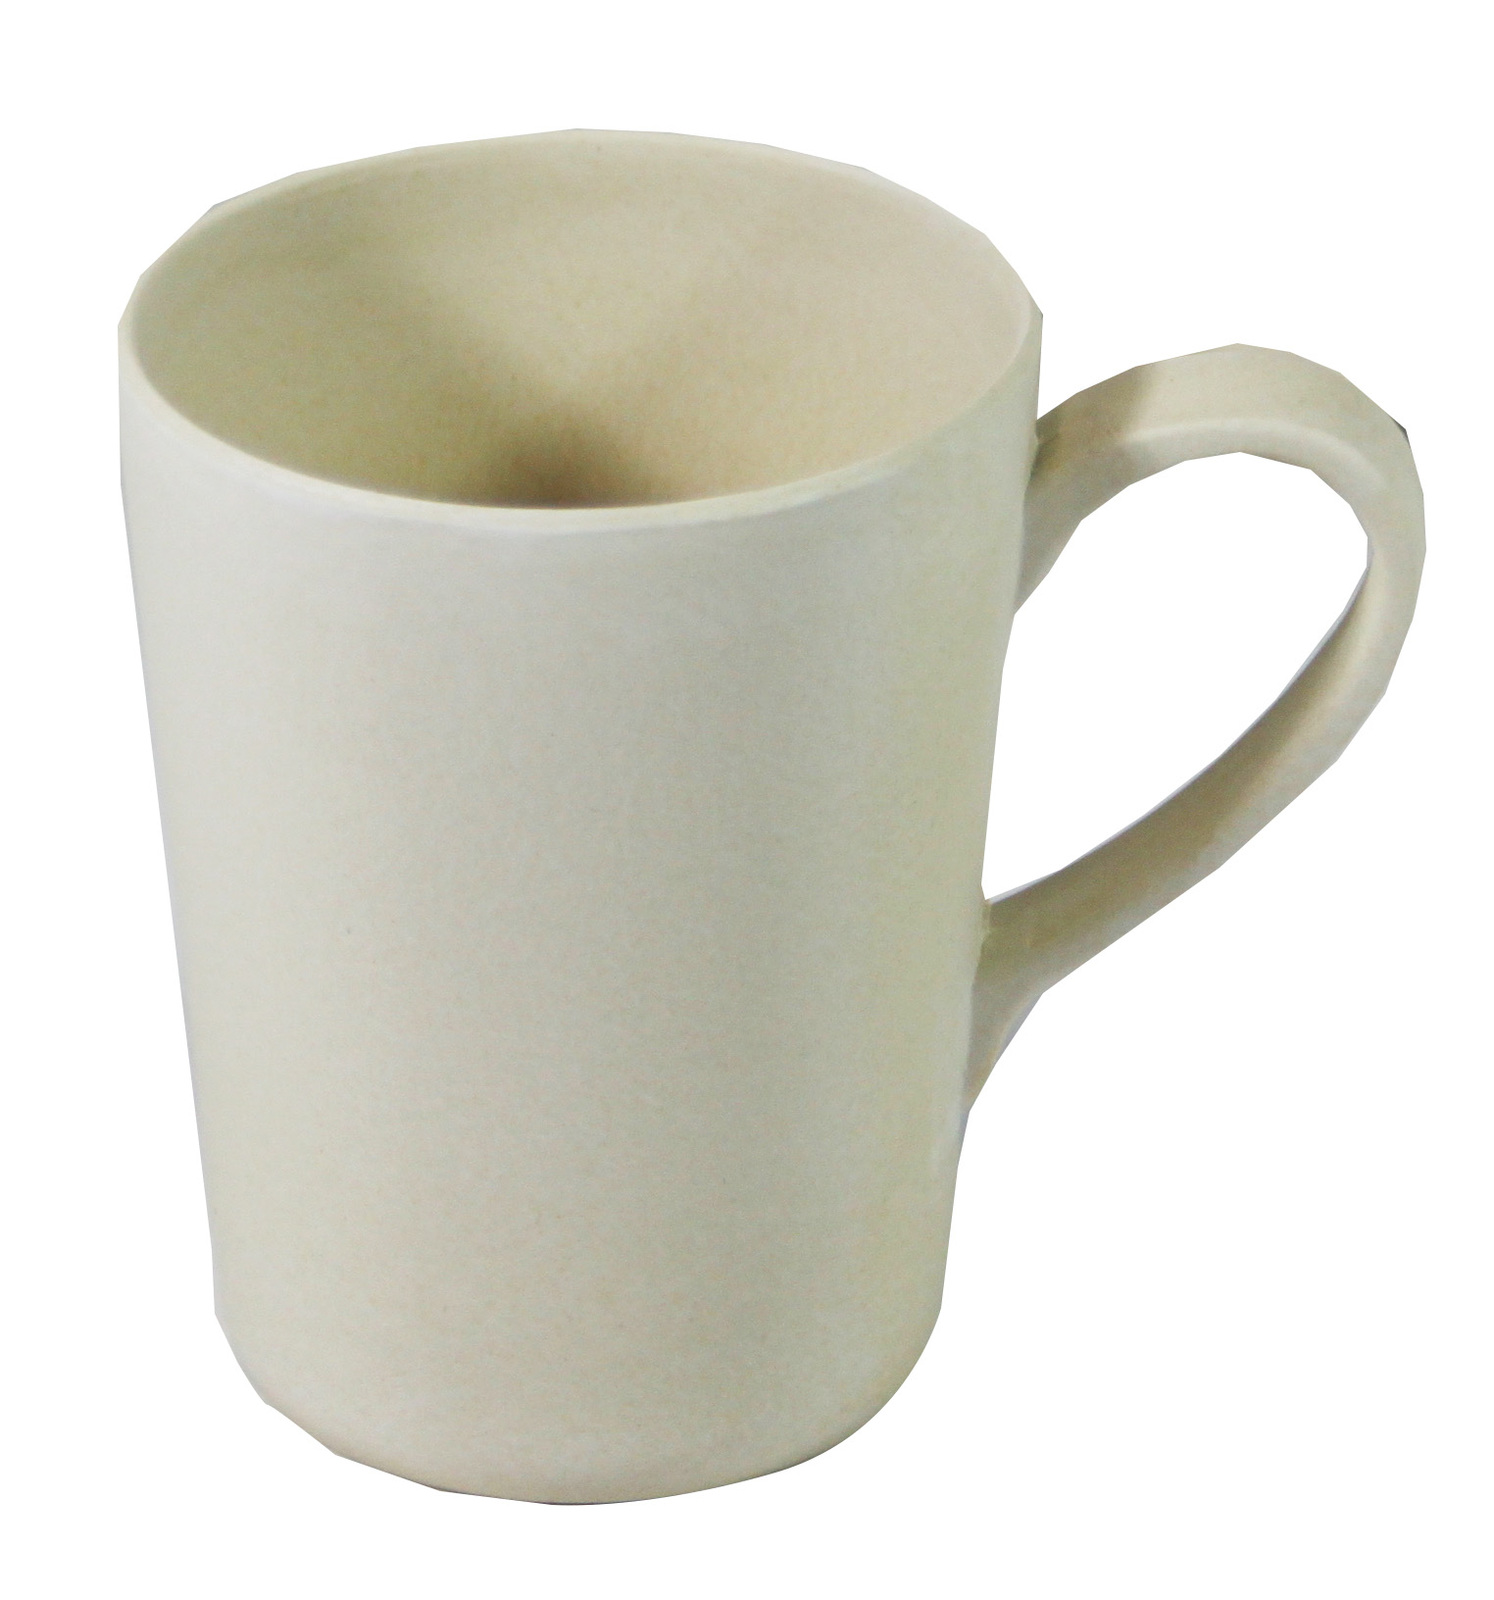 *Bamboo Crockery Natural - Mug With Handle 365ml